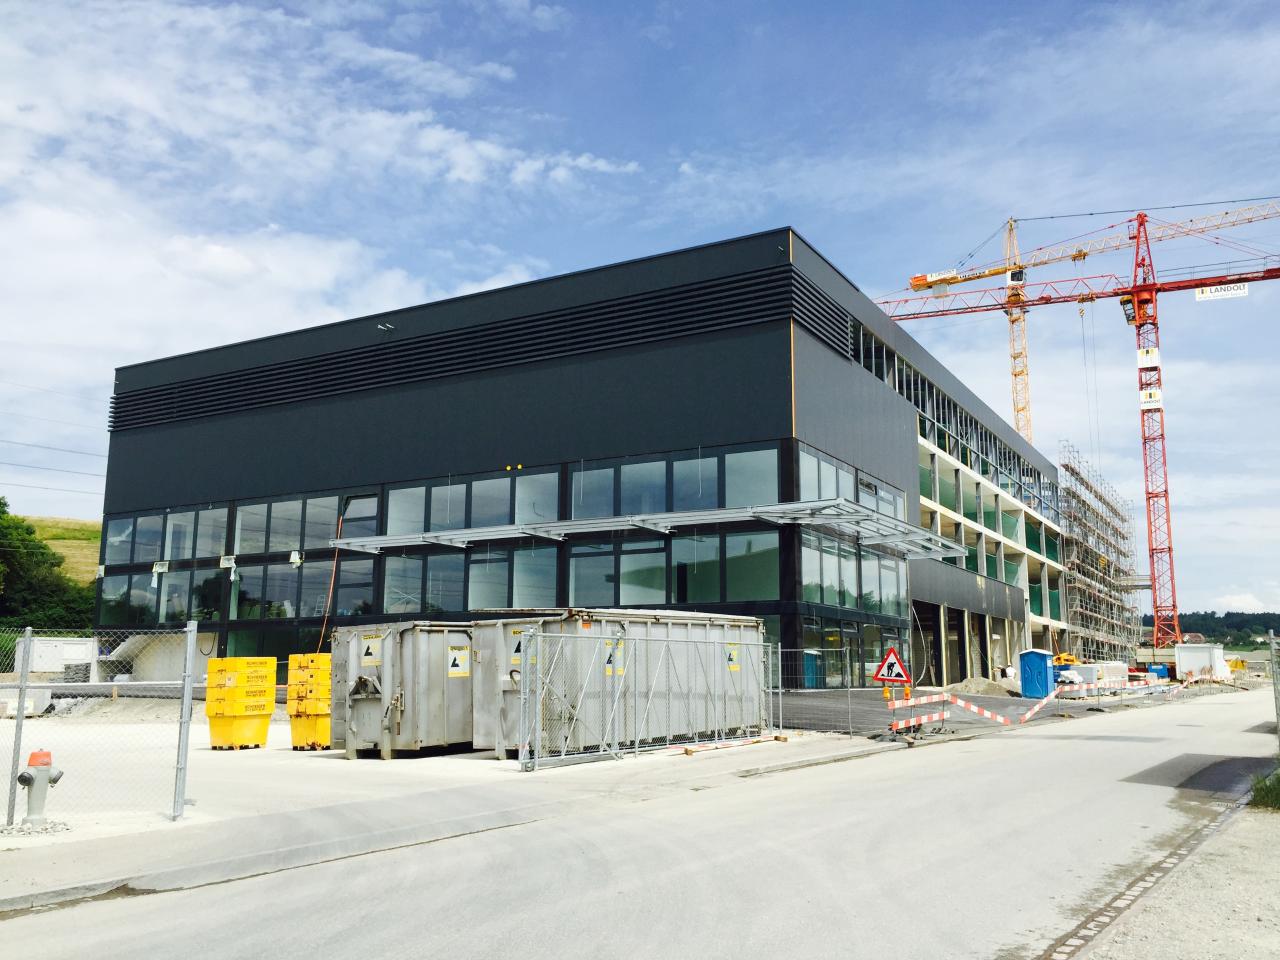 Baujahr 2015, Volketswil (Planung und Realisation durch Landolt + Co. AG Totalunternehmung RDN)